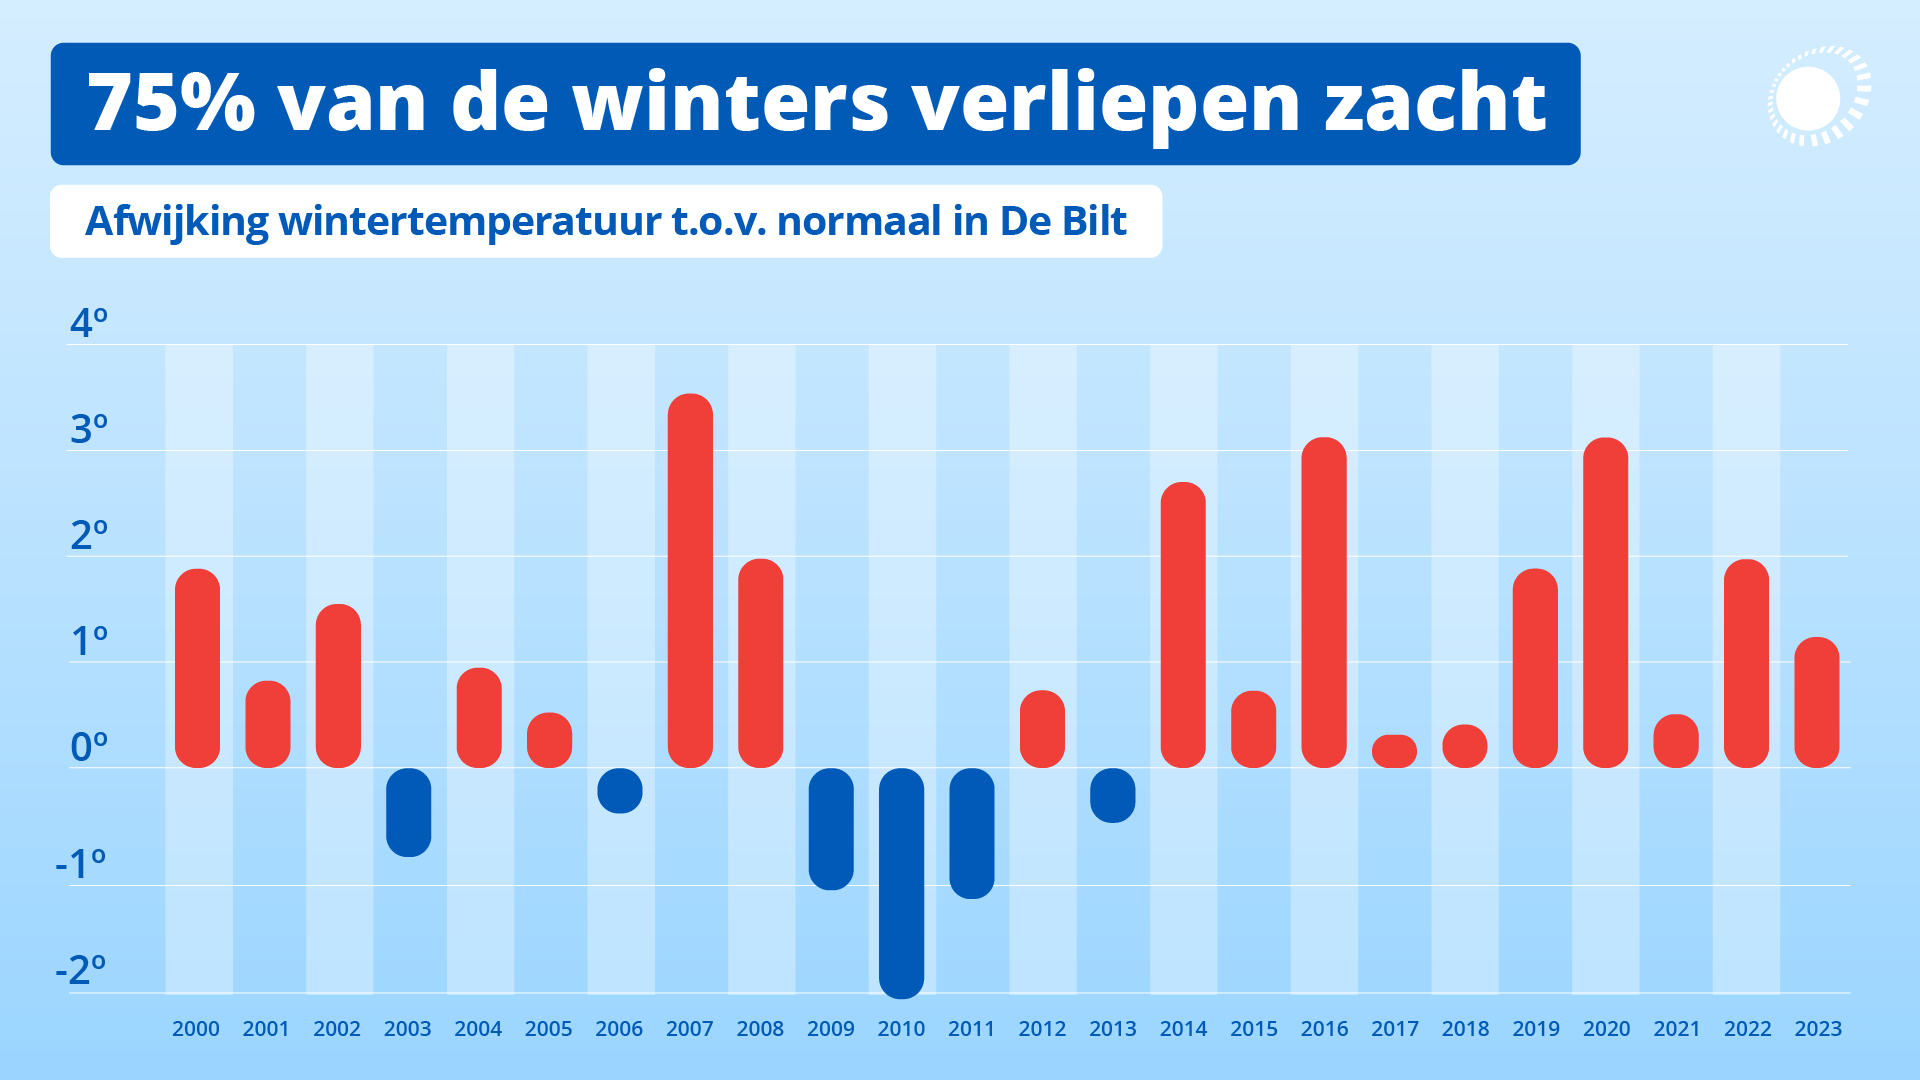 De afwijking van de wintertemperatuur van alle winters uit deze eeuw in vergelijking met de toen geldende normaal. 